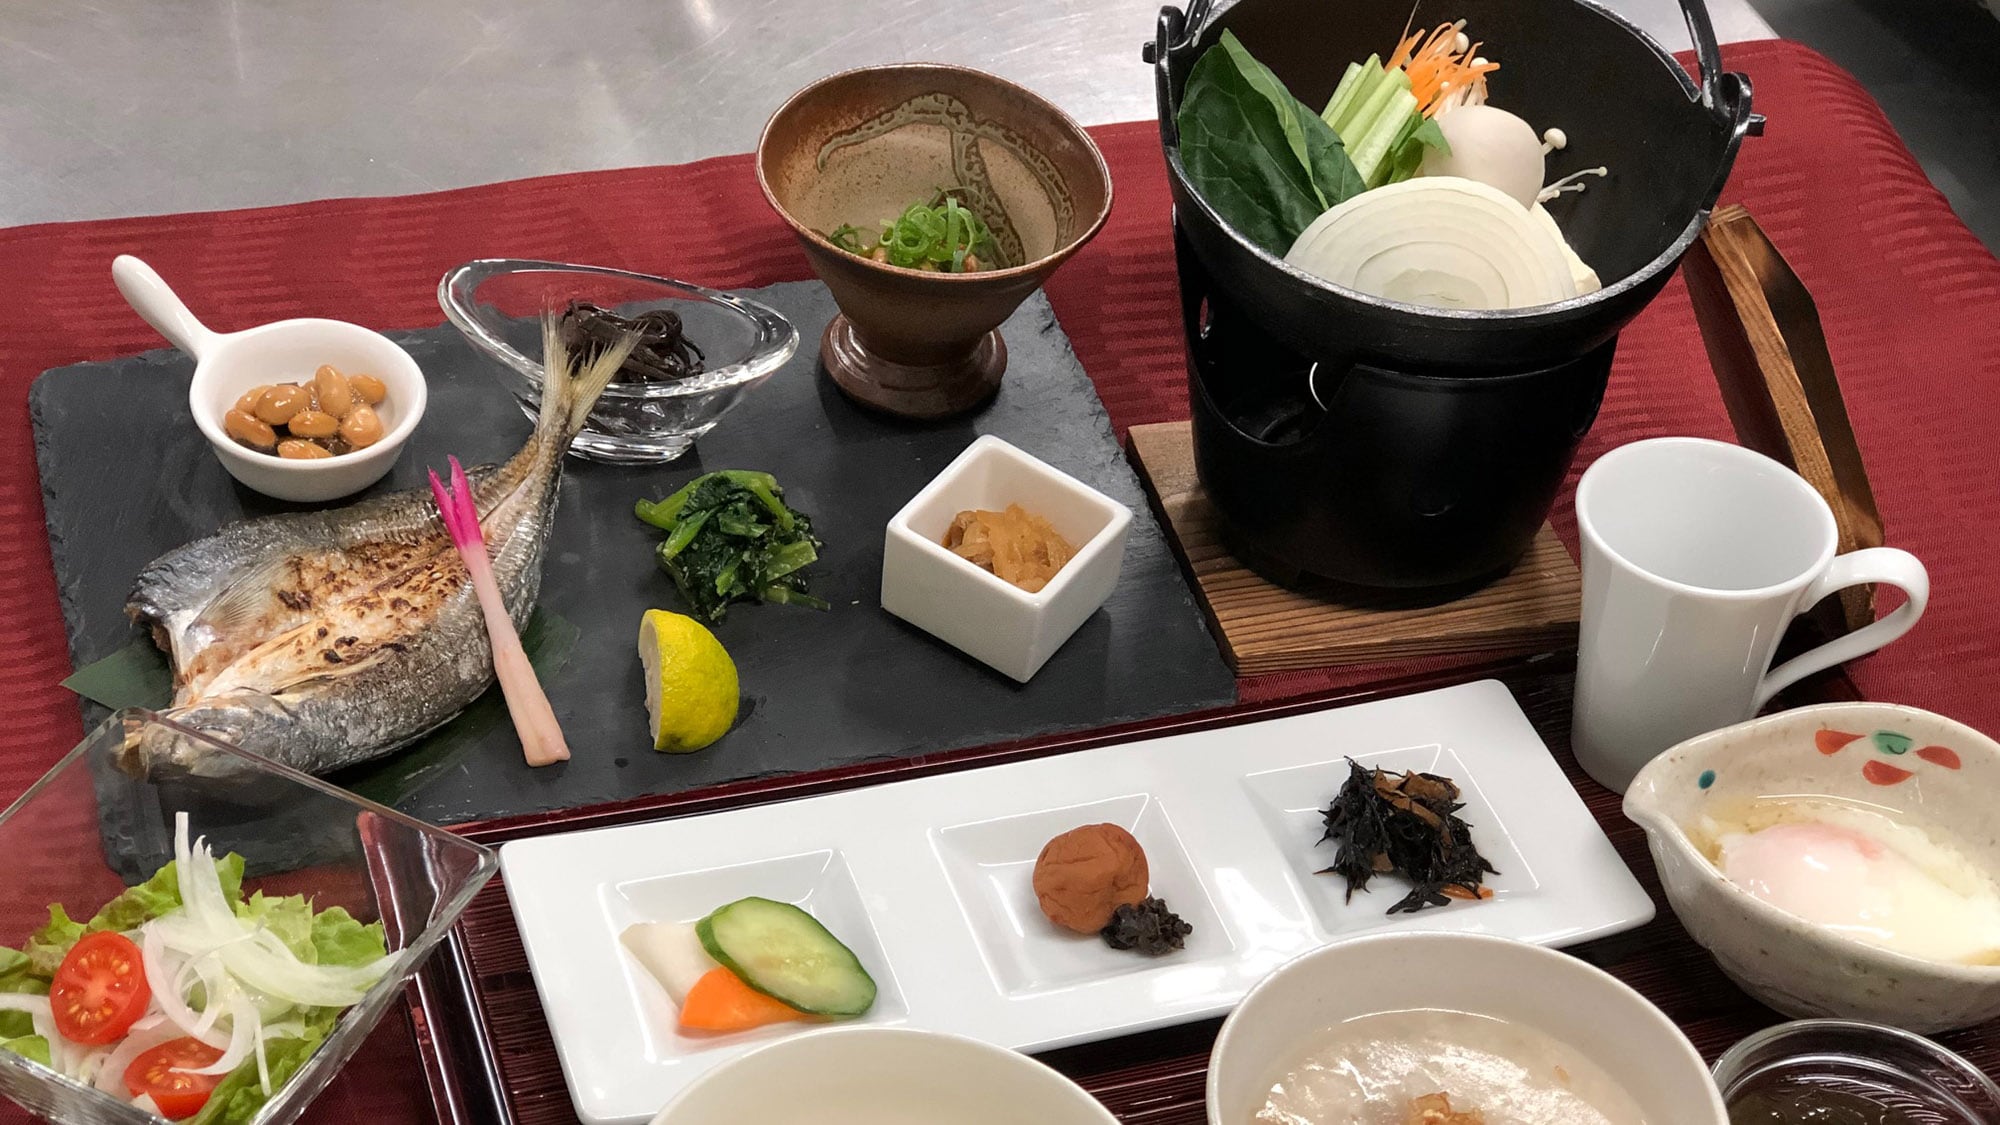 ・[Makanan] Sarapan Jepang yang lezat dan sehat dengan banyak sayuran